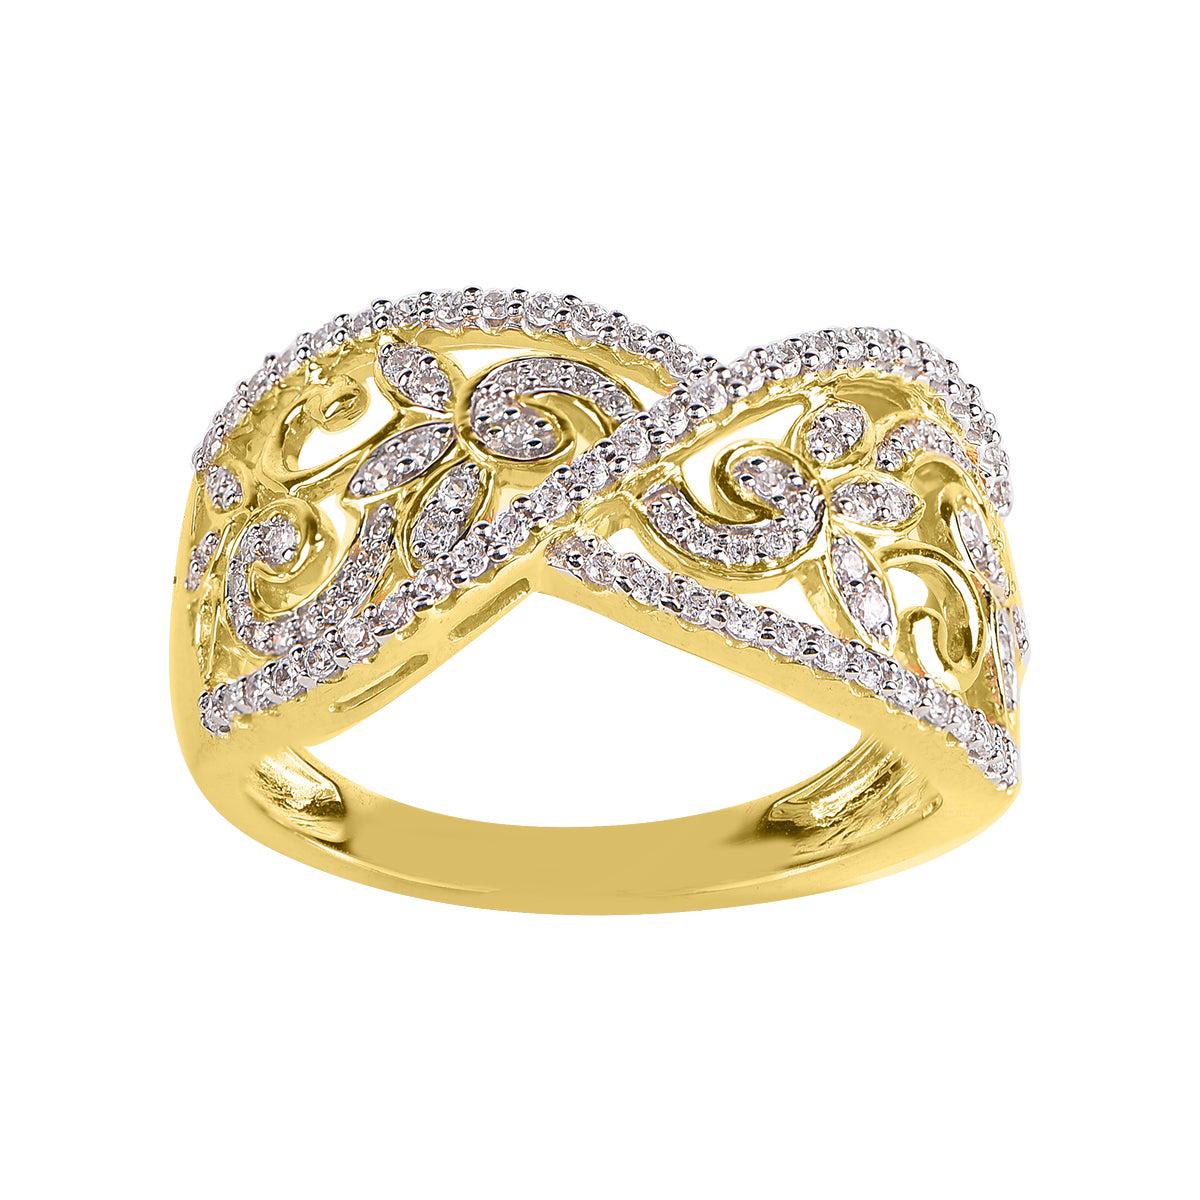 TJD 0.50 Carat Round Diamond 14 Karat Yellow Gold Fashion Wedding Band Ring